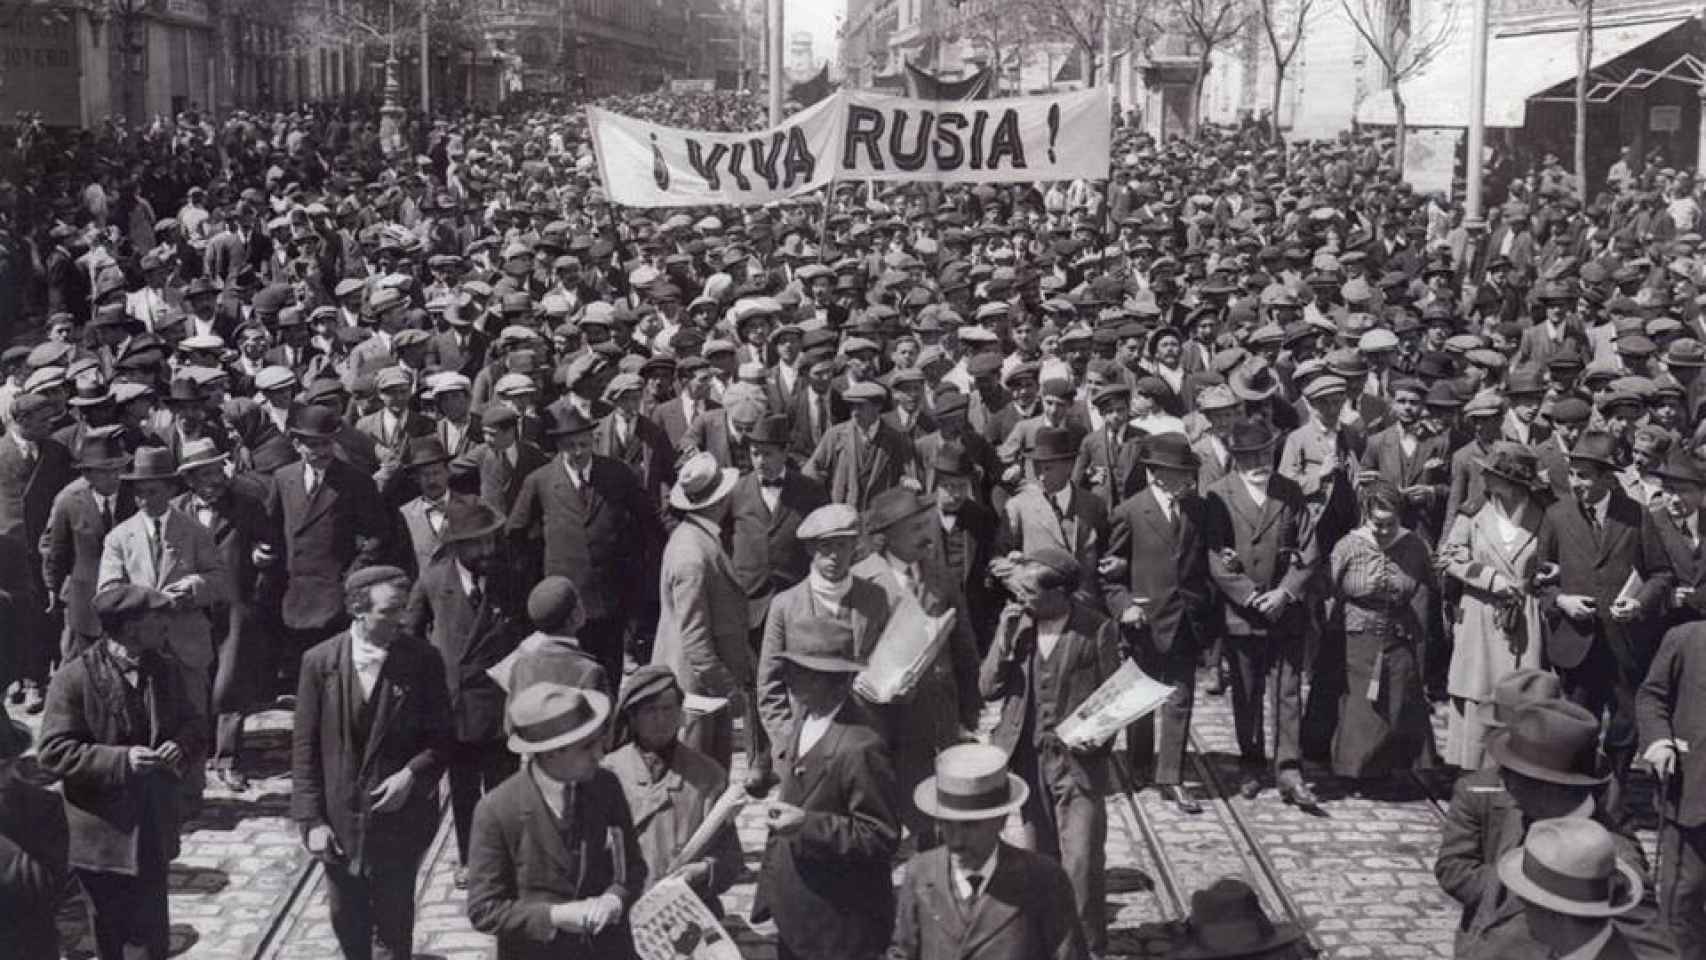 Fotografía tomada en Madrid el 1 de mayo de 1919.